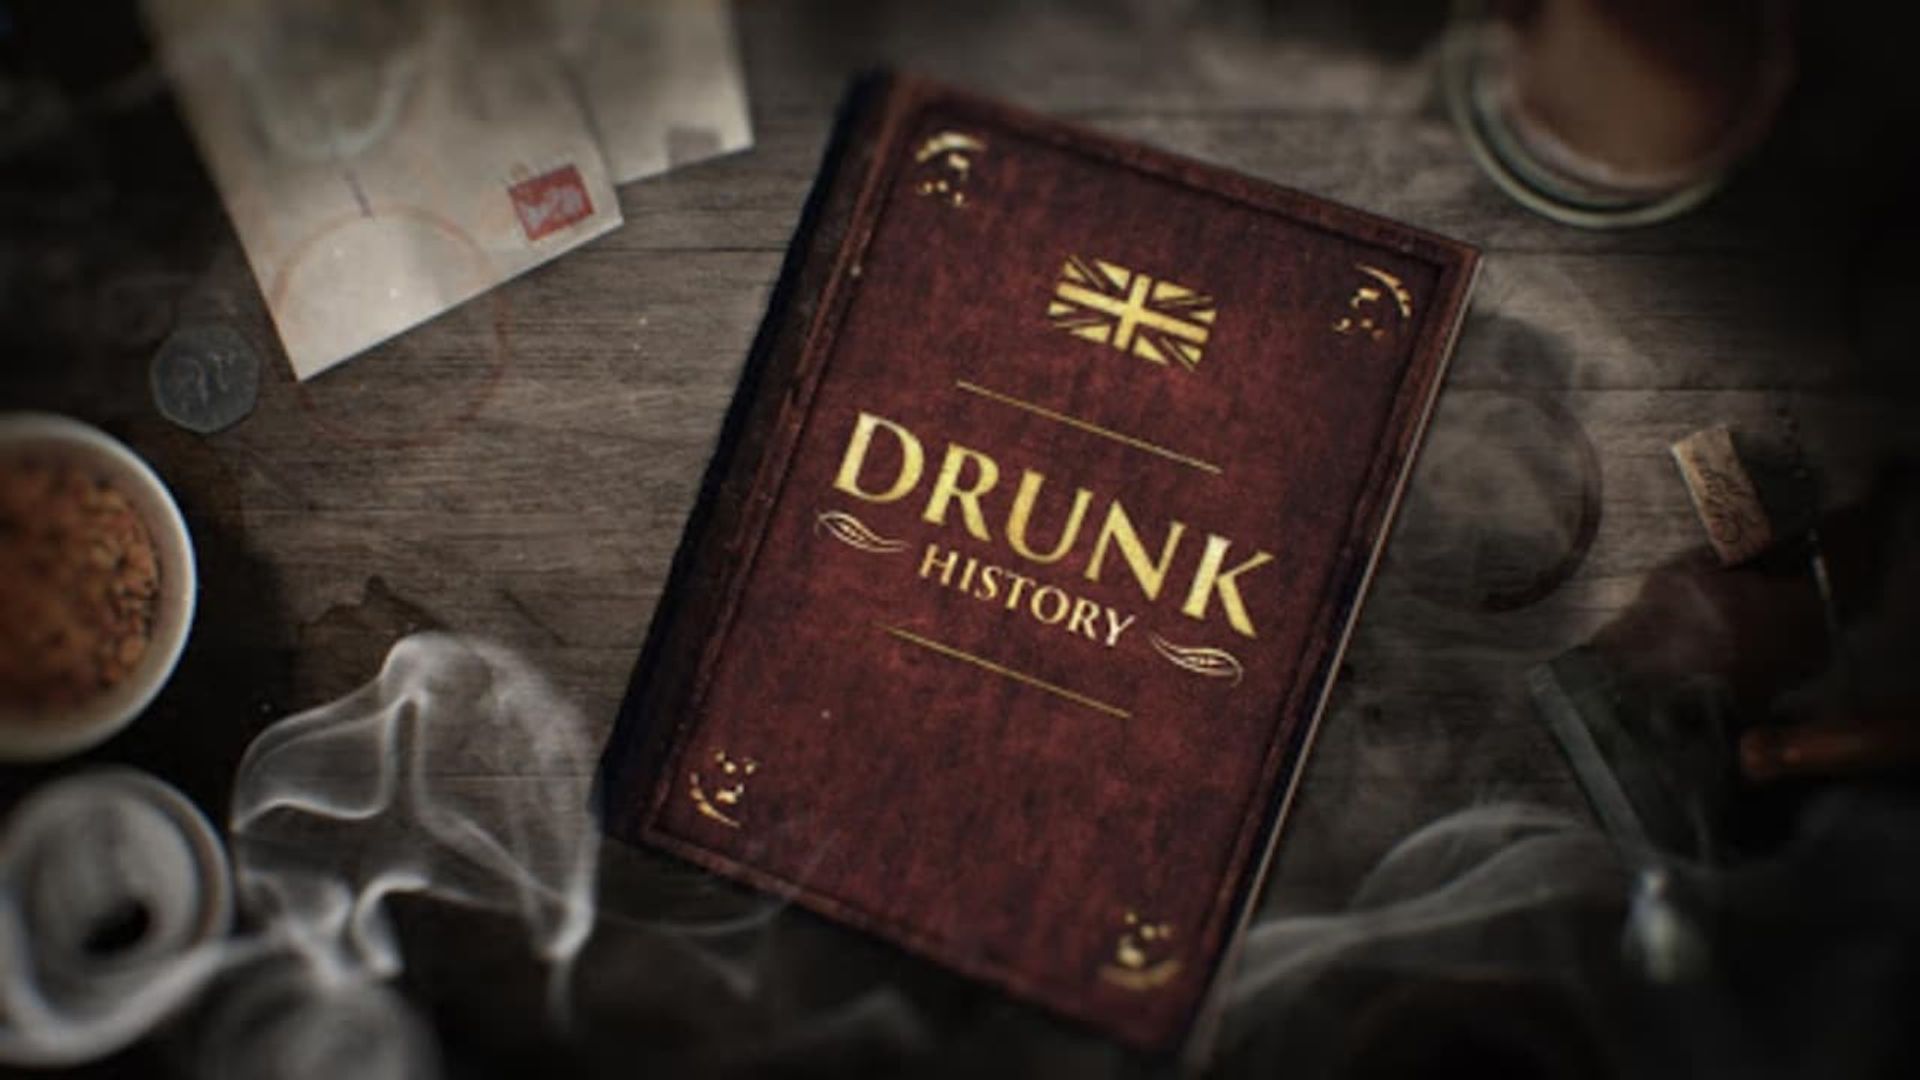 Drunk History: UK background